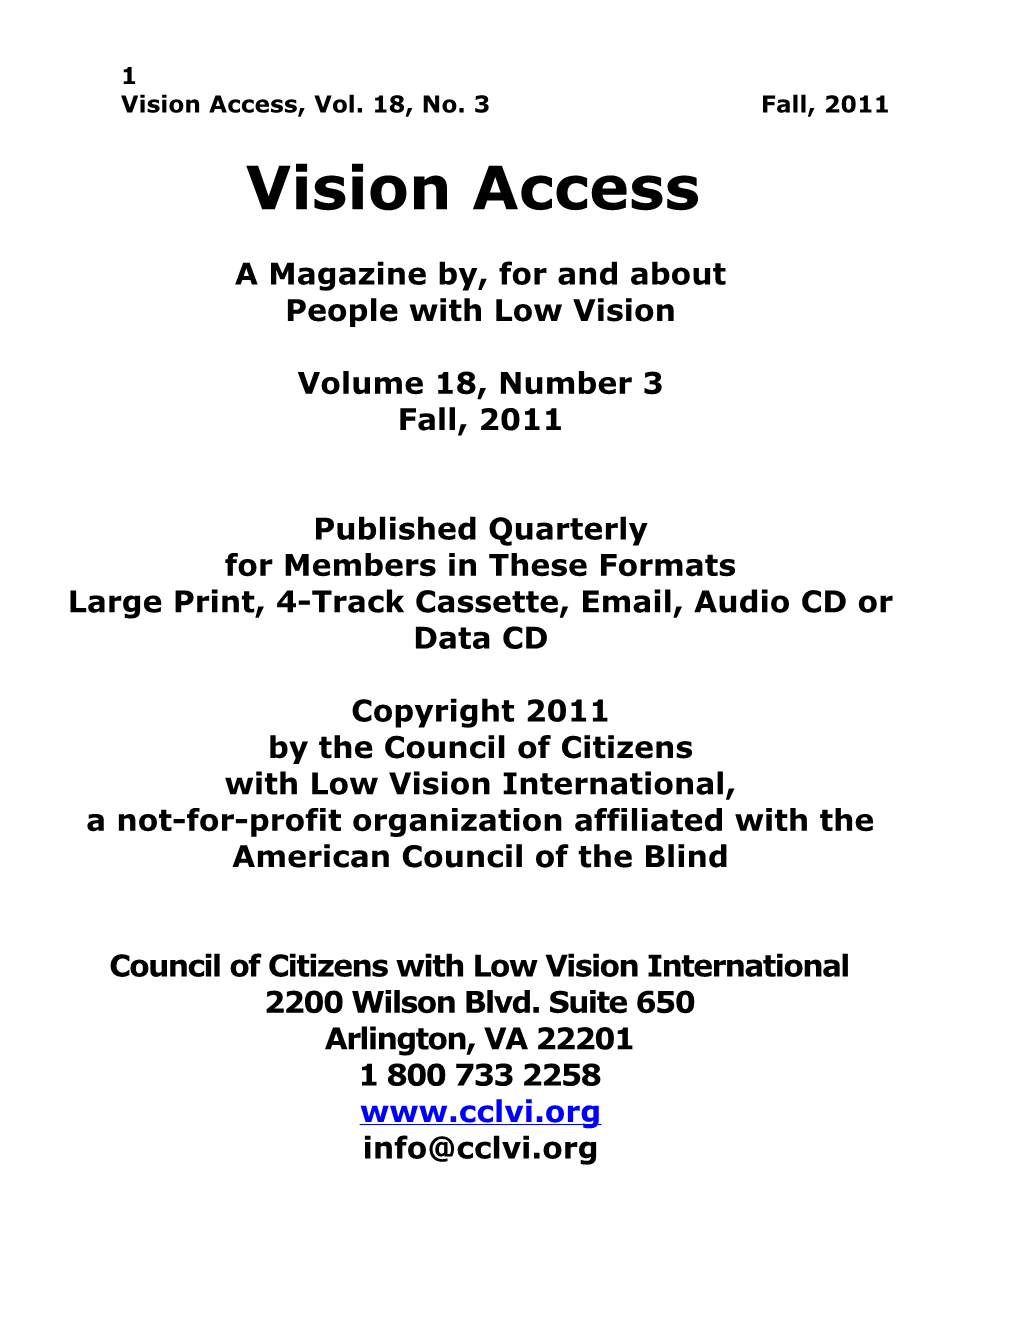 Vision Access, Vol. 18, No. 3 Fall, 2011